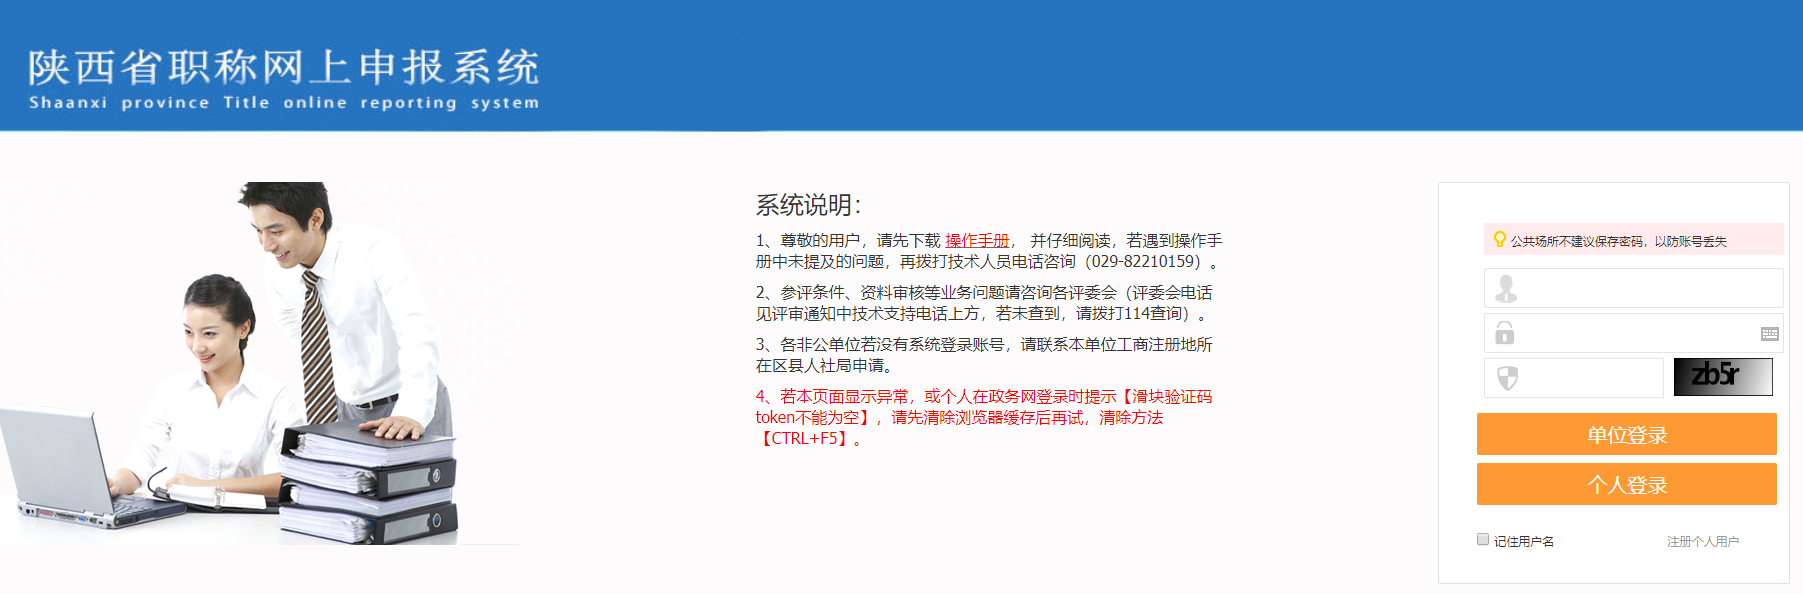 陕西省职称网上申报系统